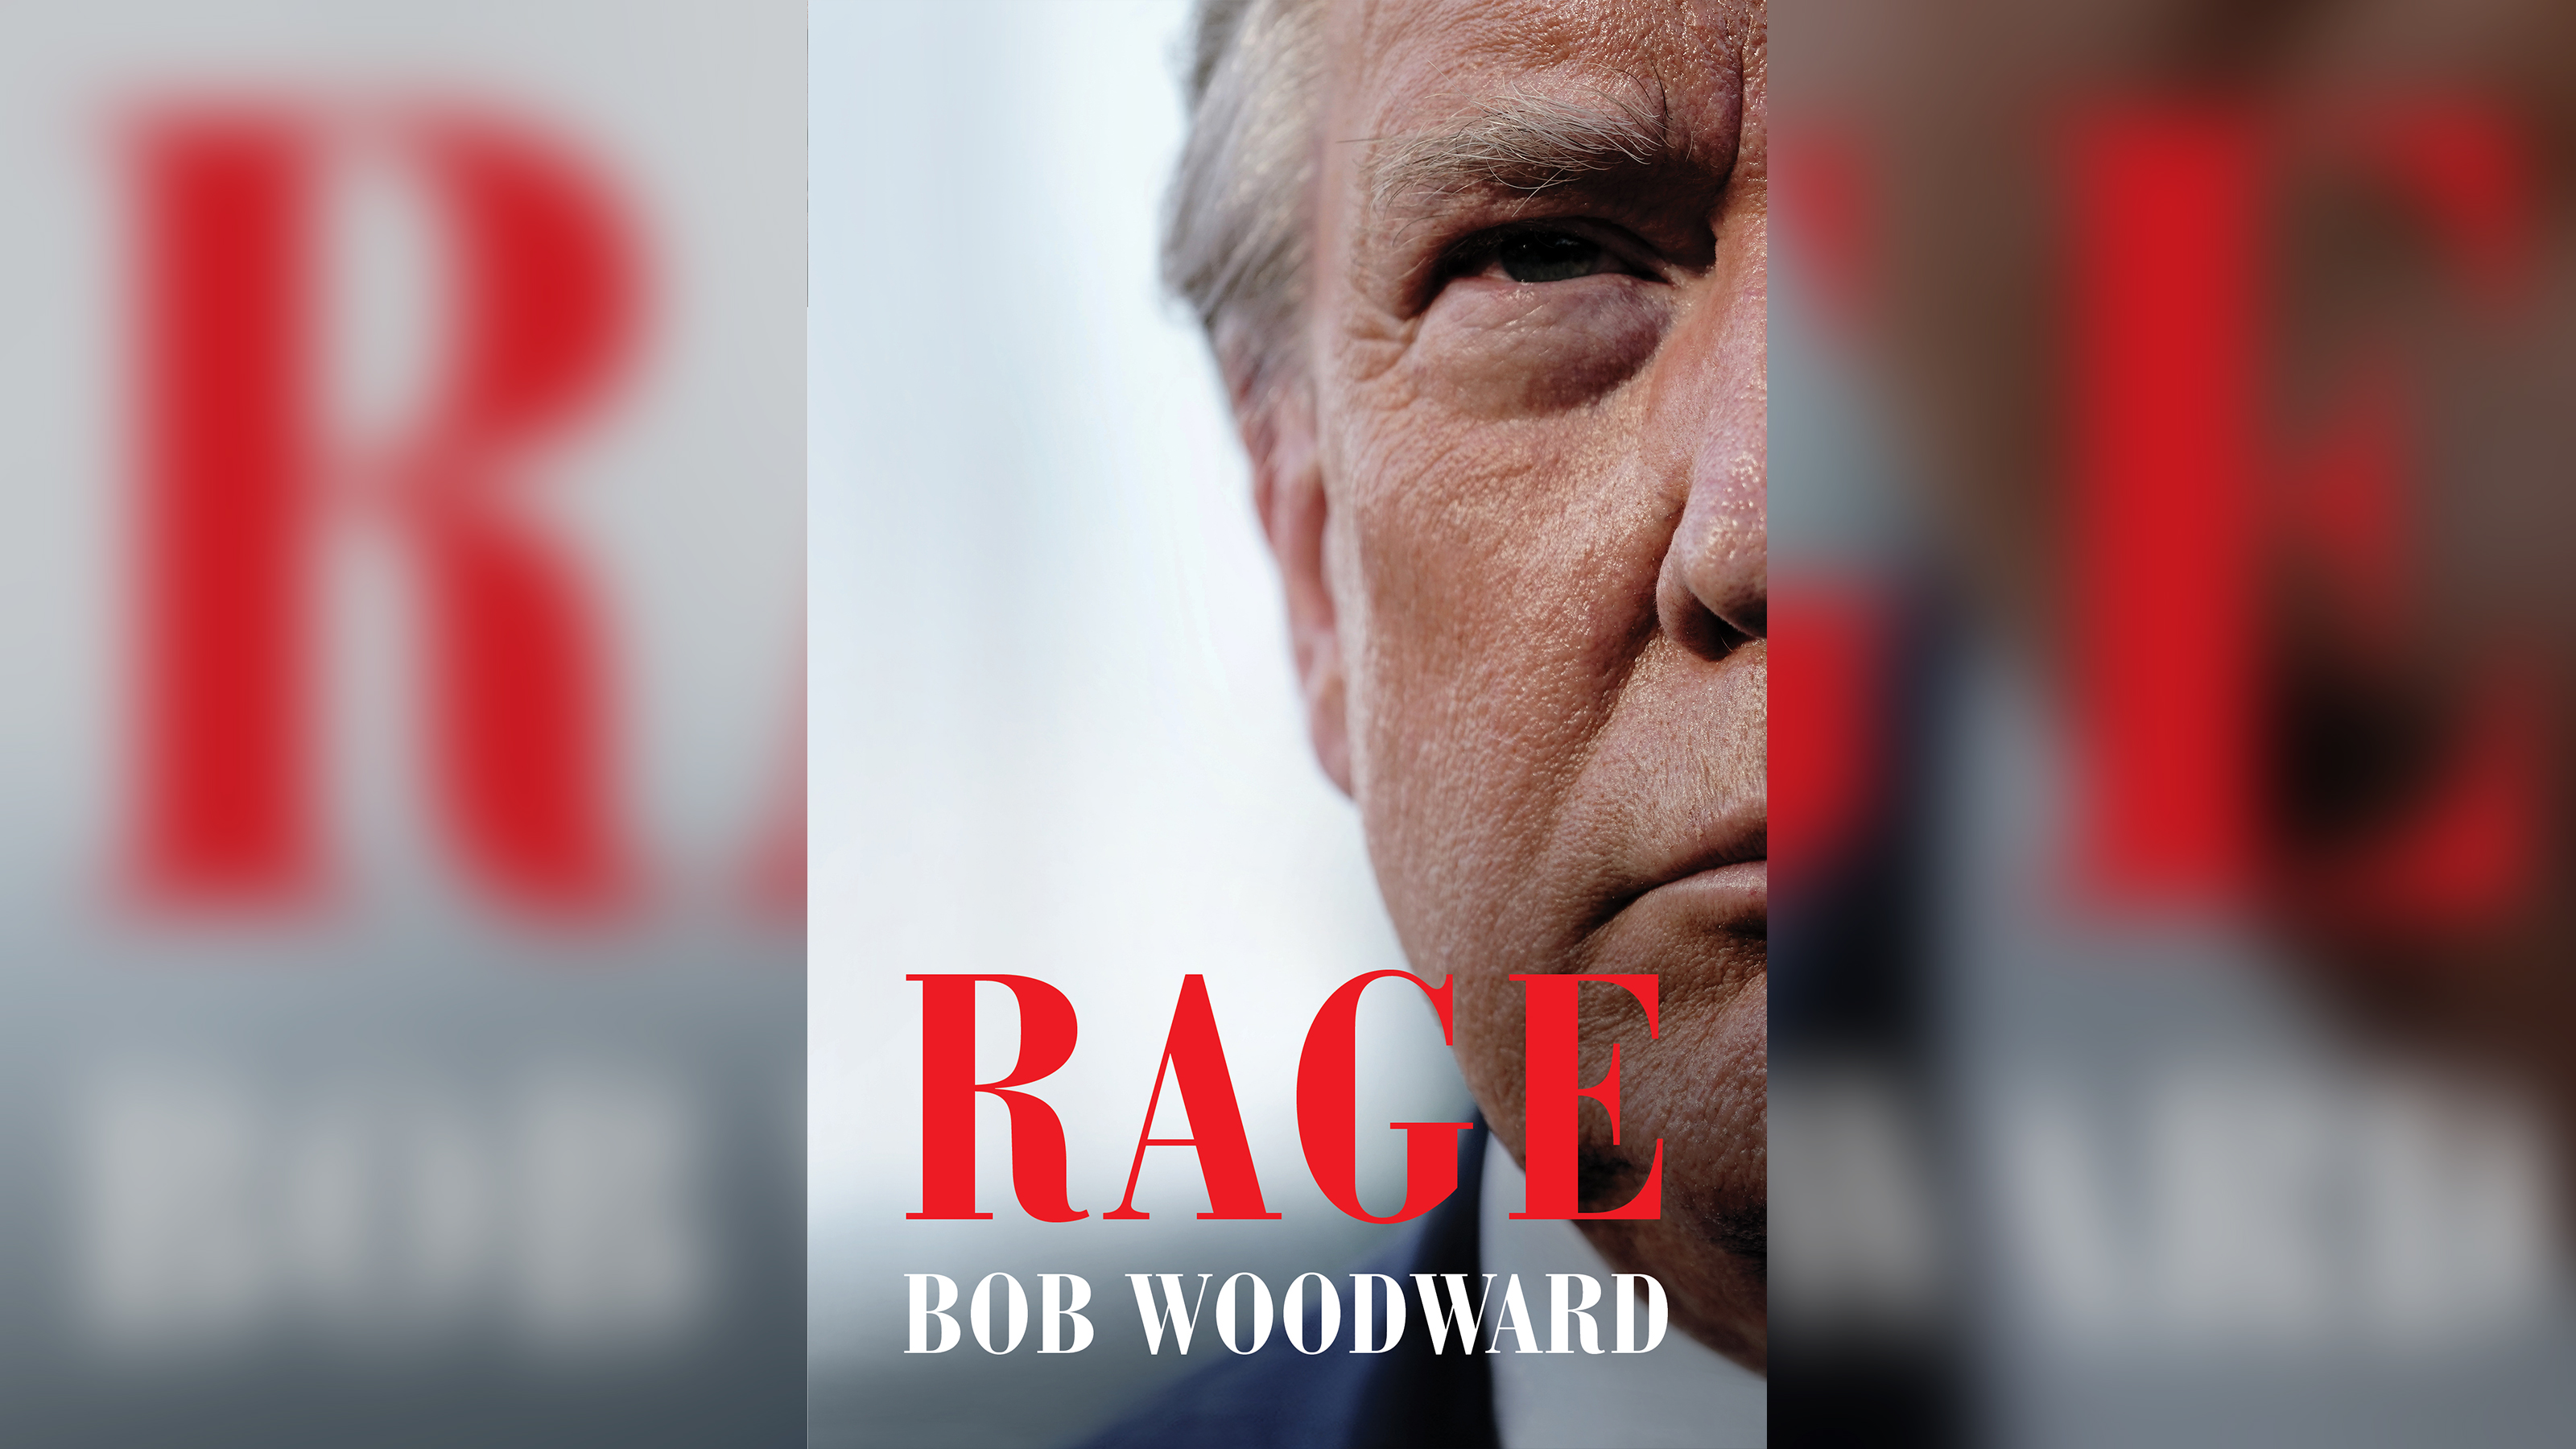 Capa do livro 'Rage', do jornalista Bob Woodward